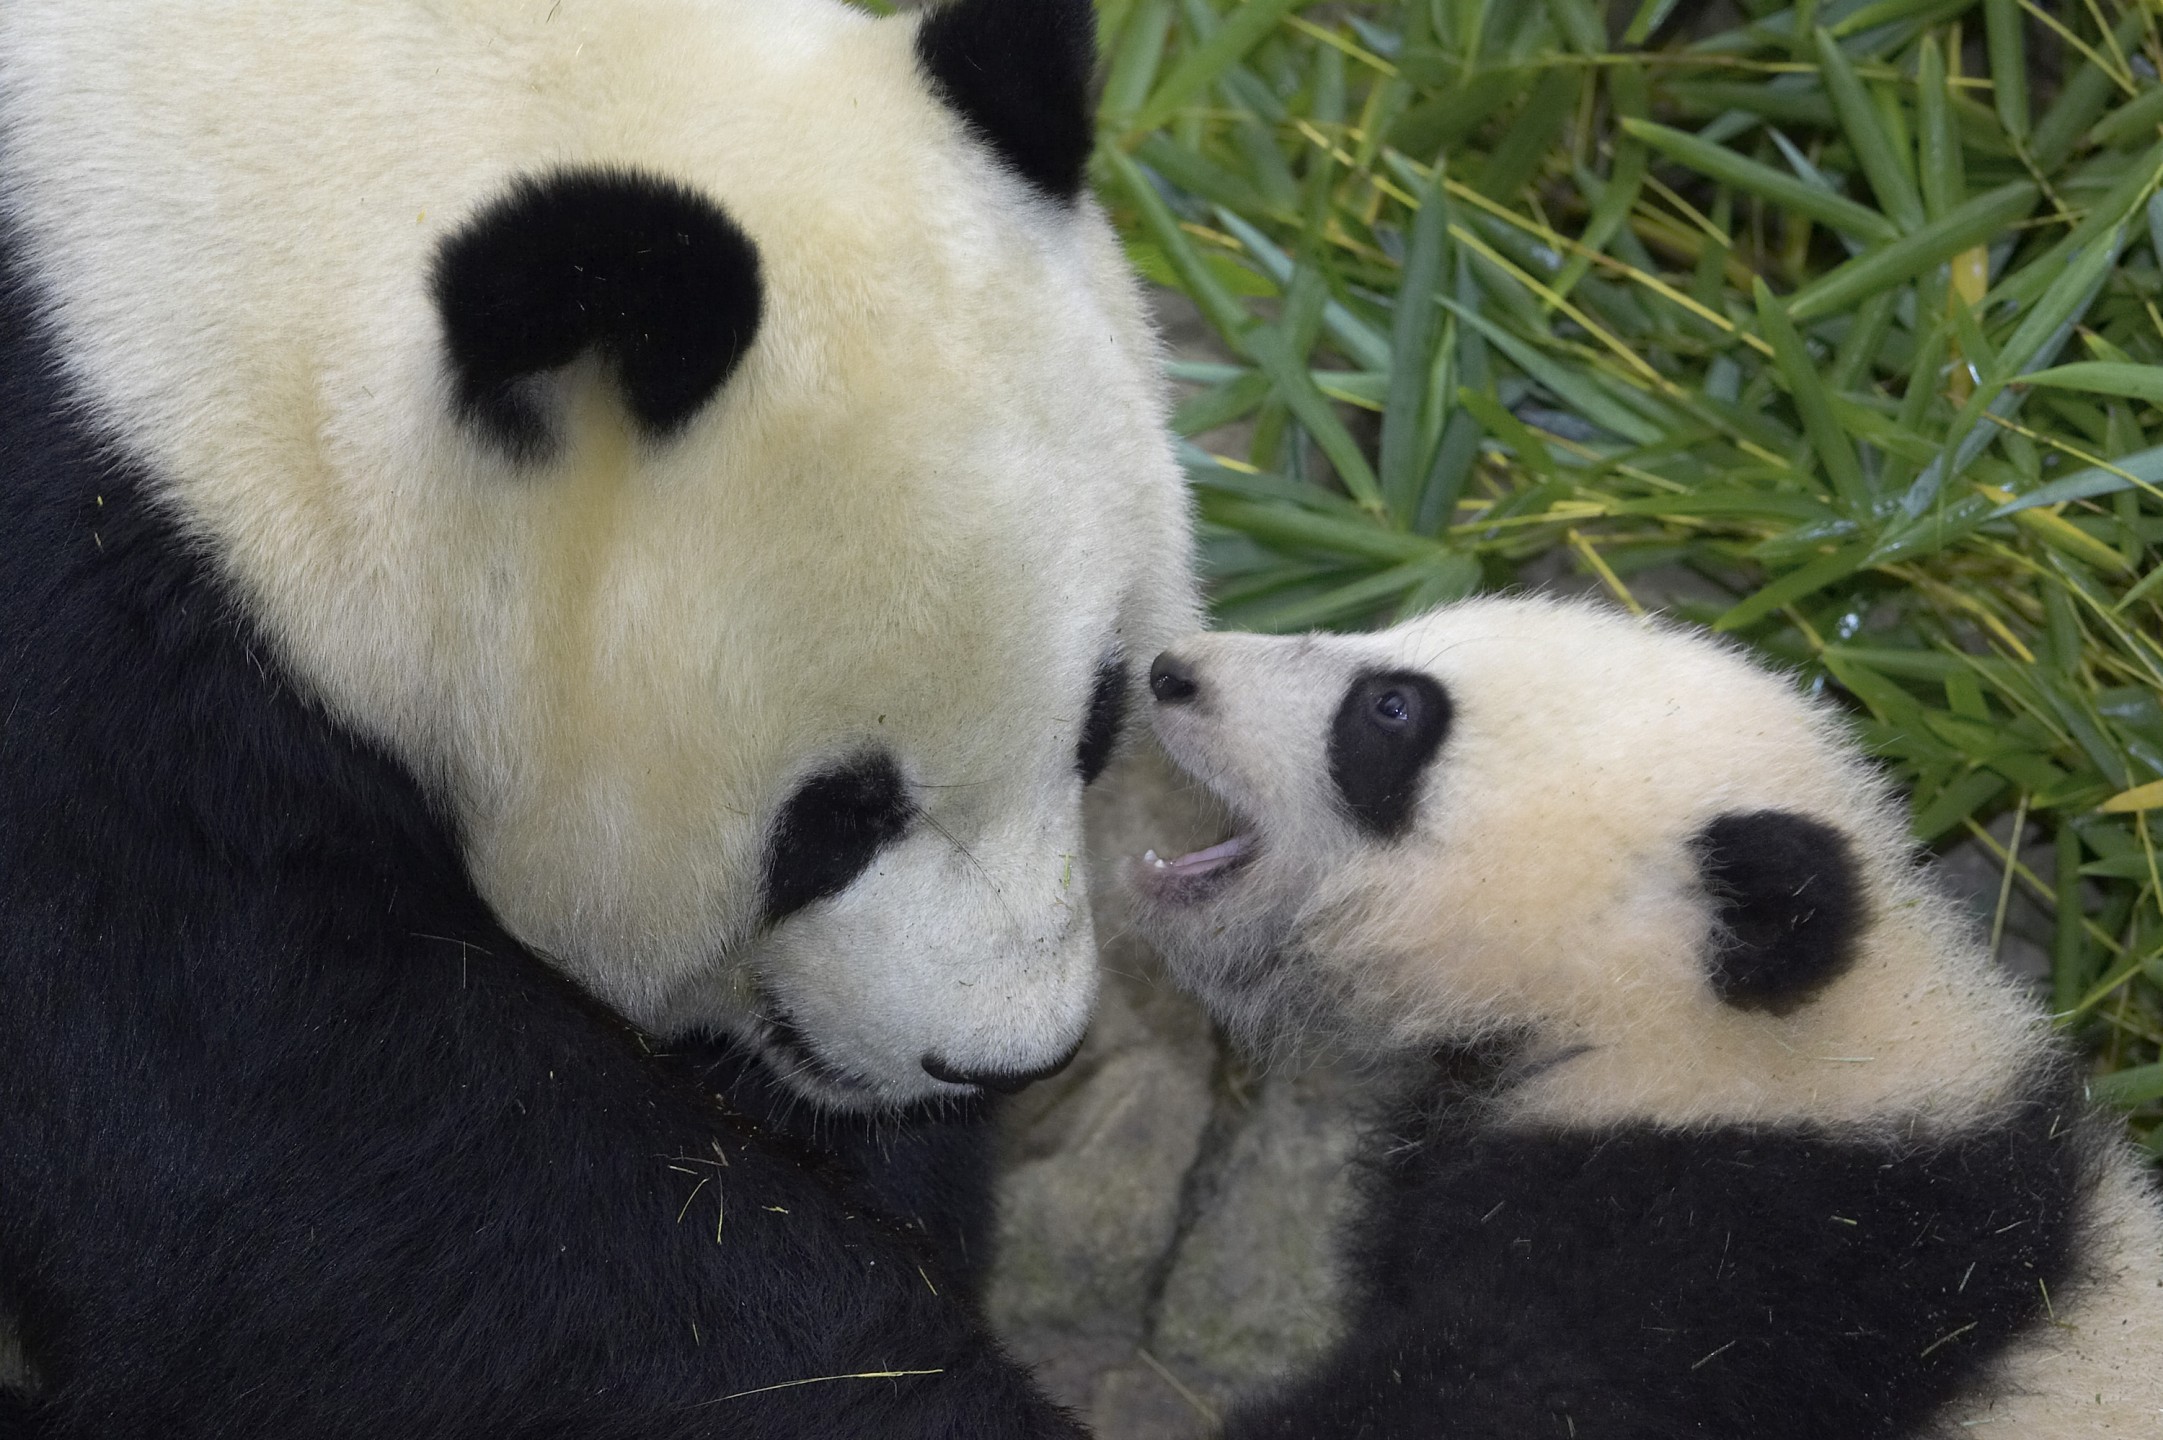 Bai Yun and Su Lin, giant pandas